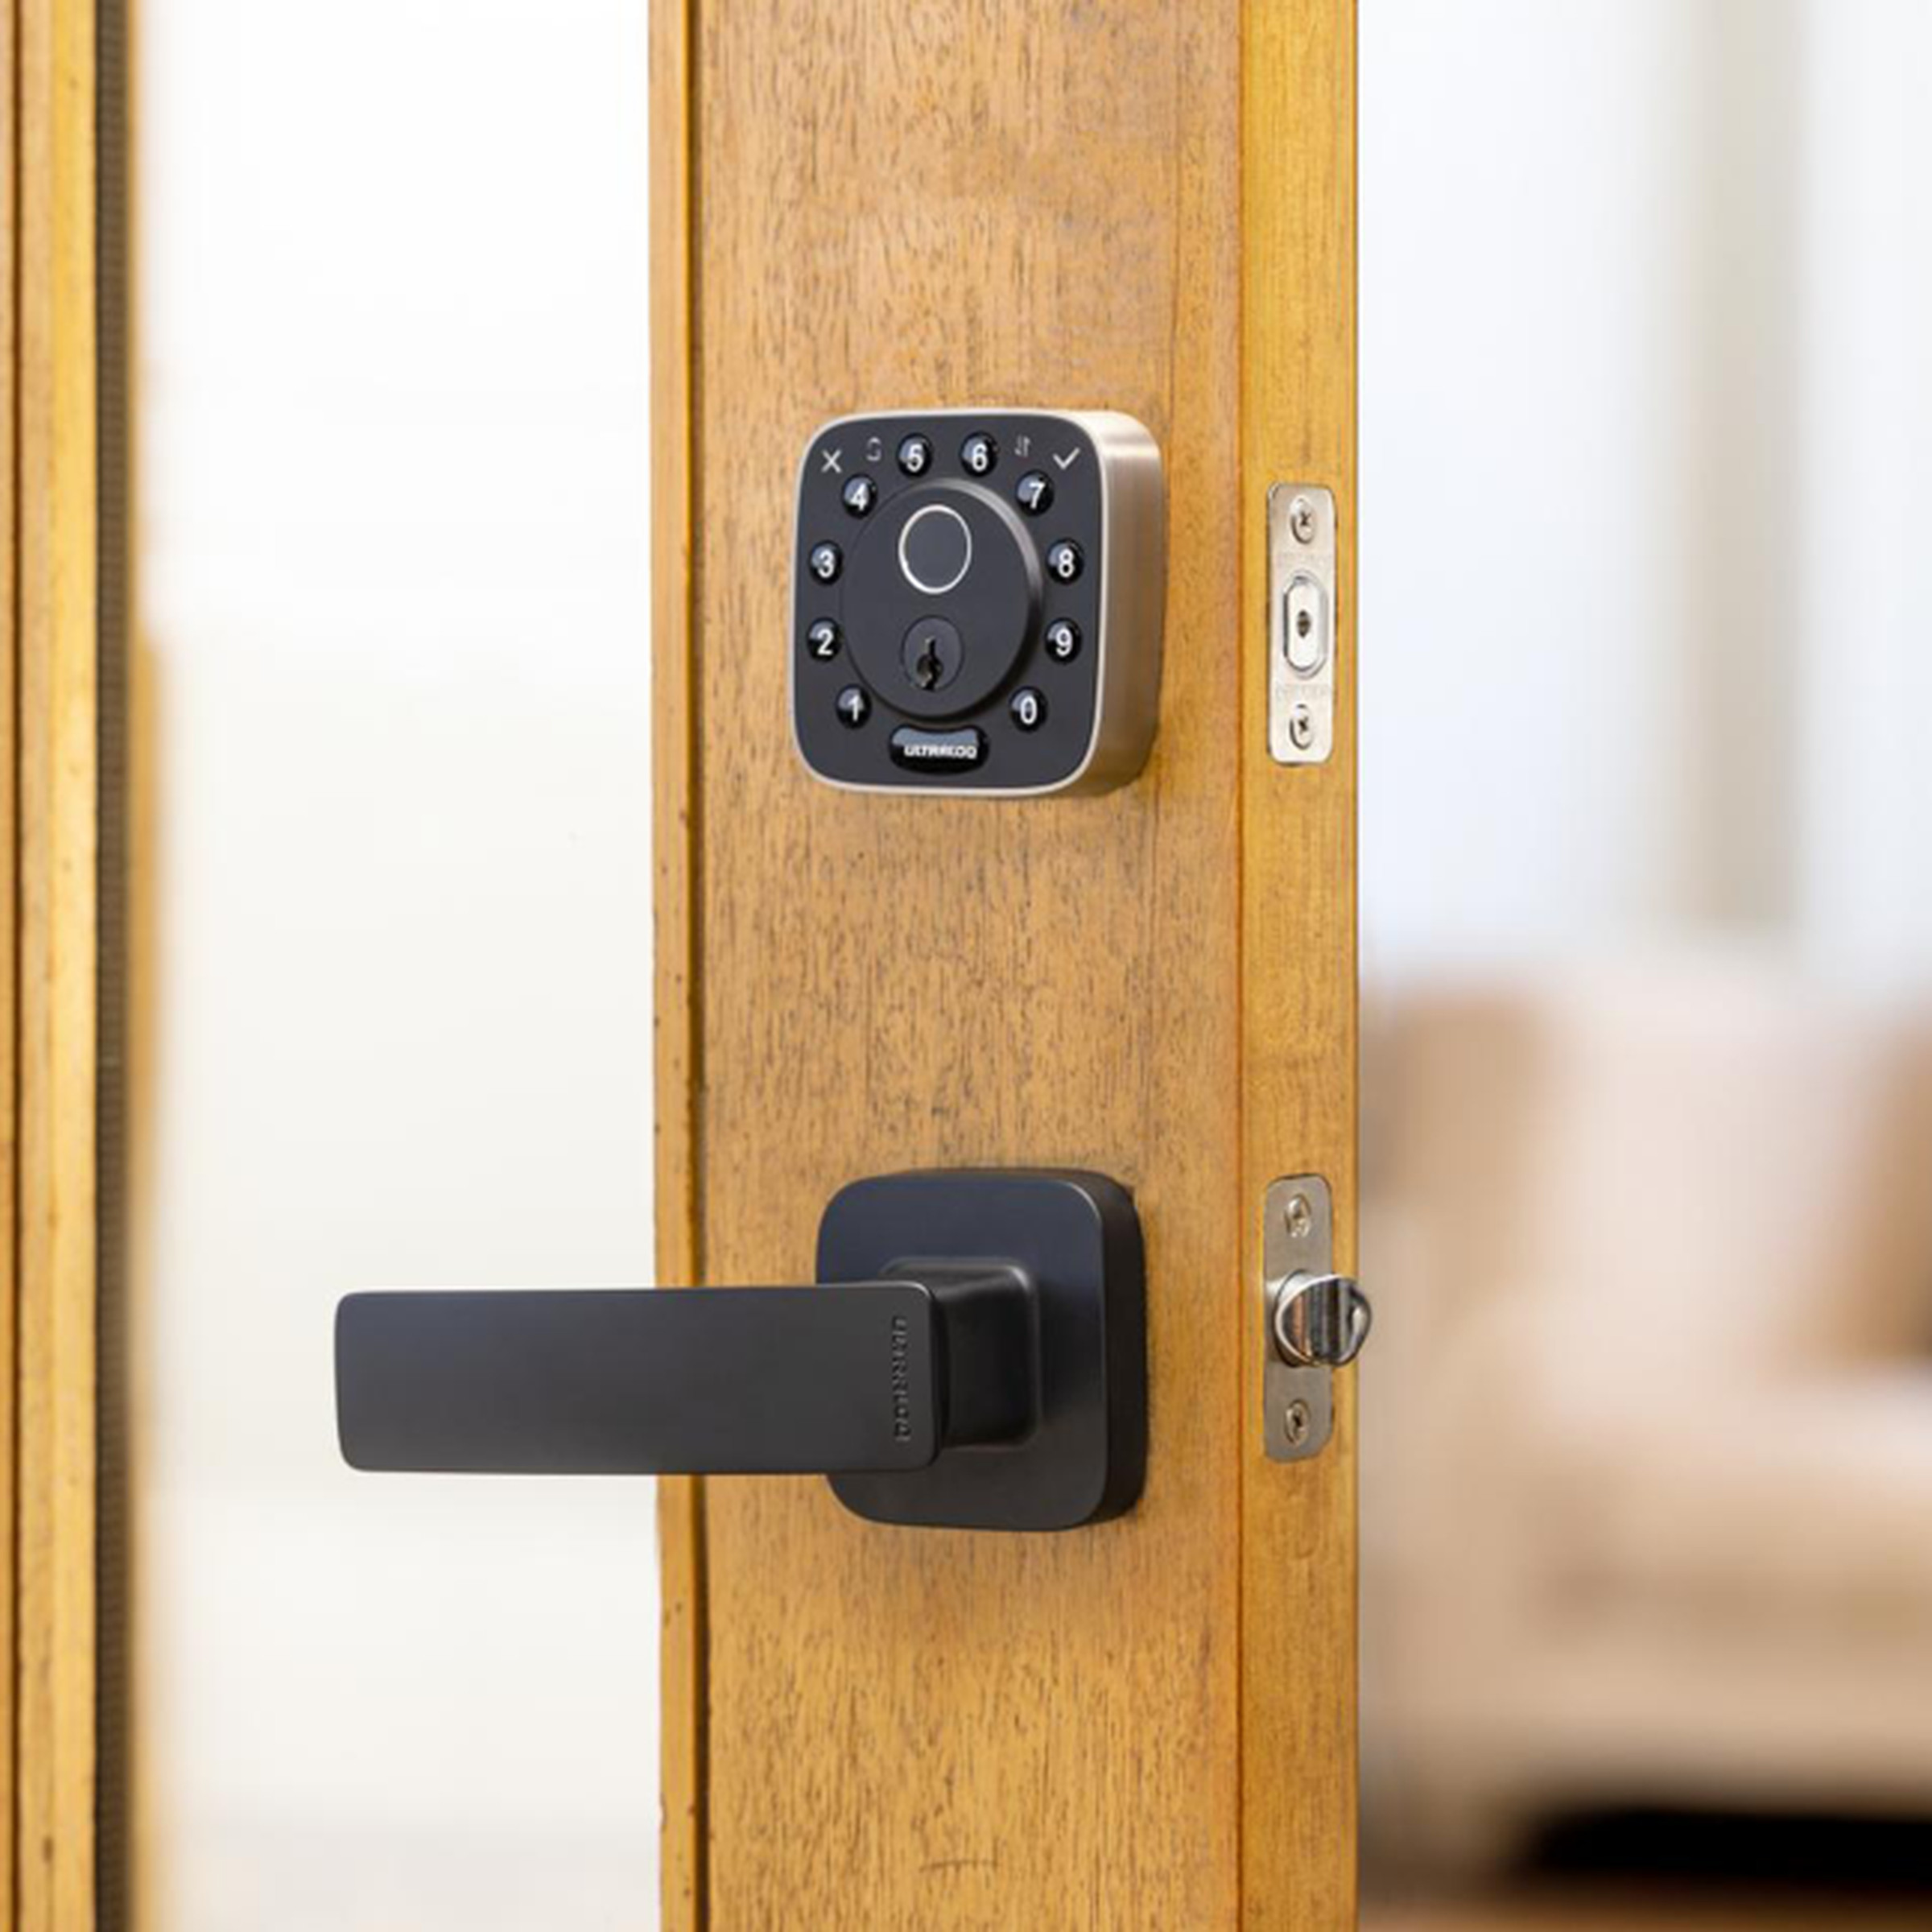 A black smart lock on a wooden door.